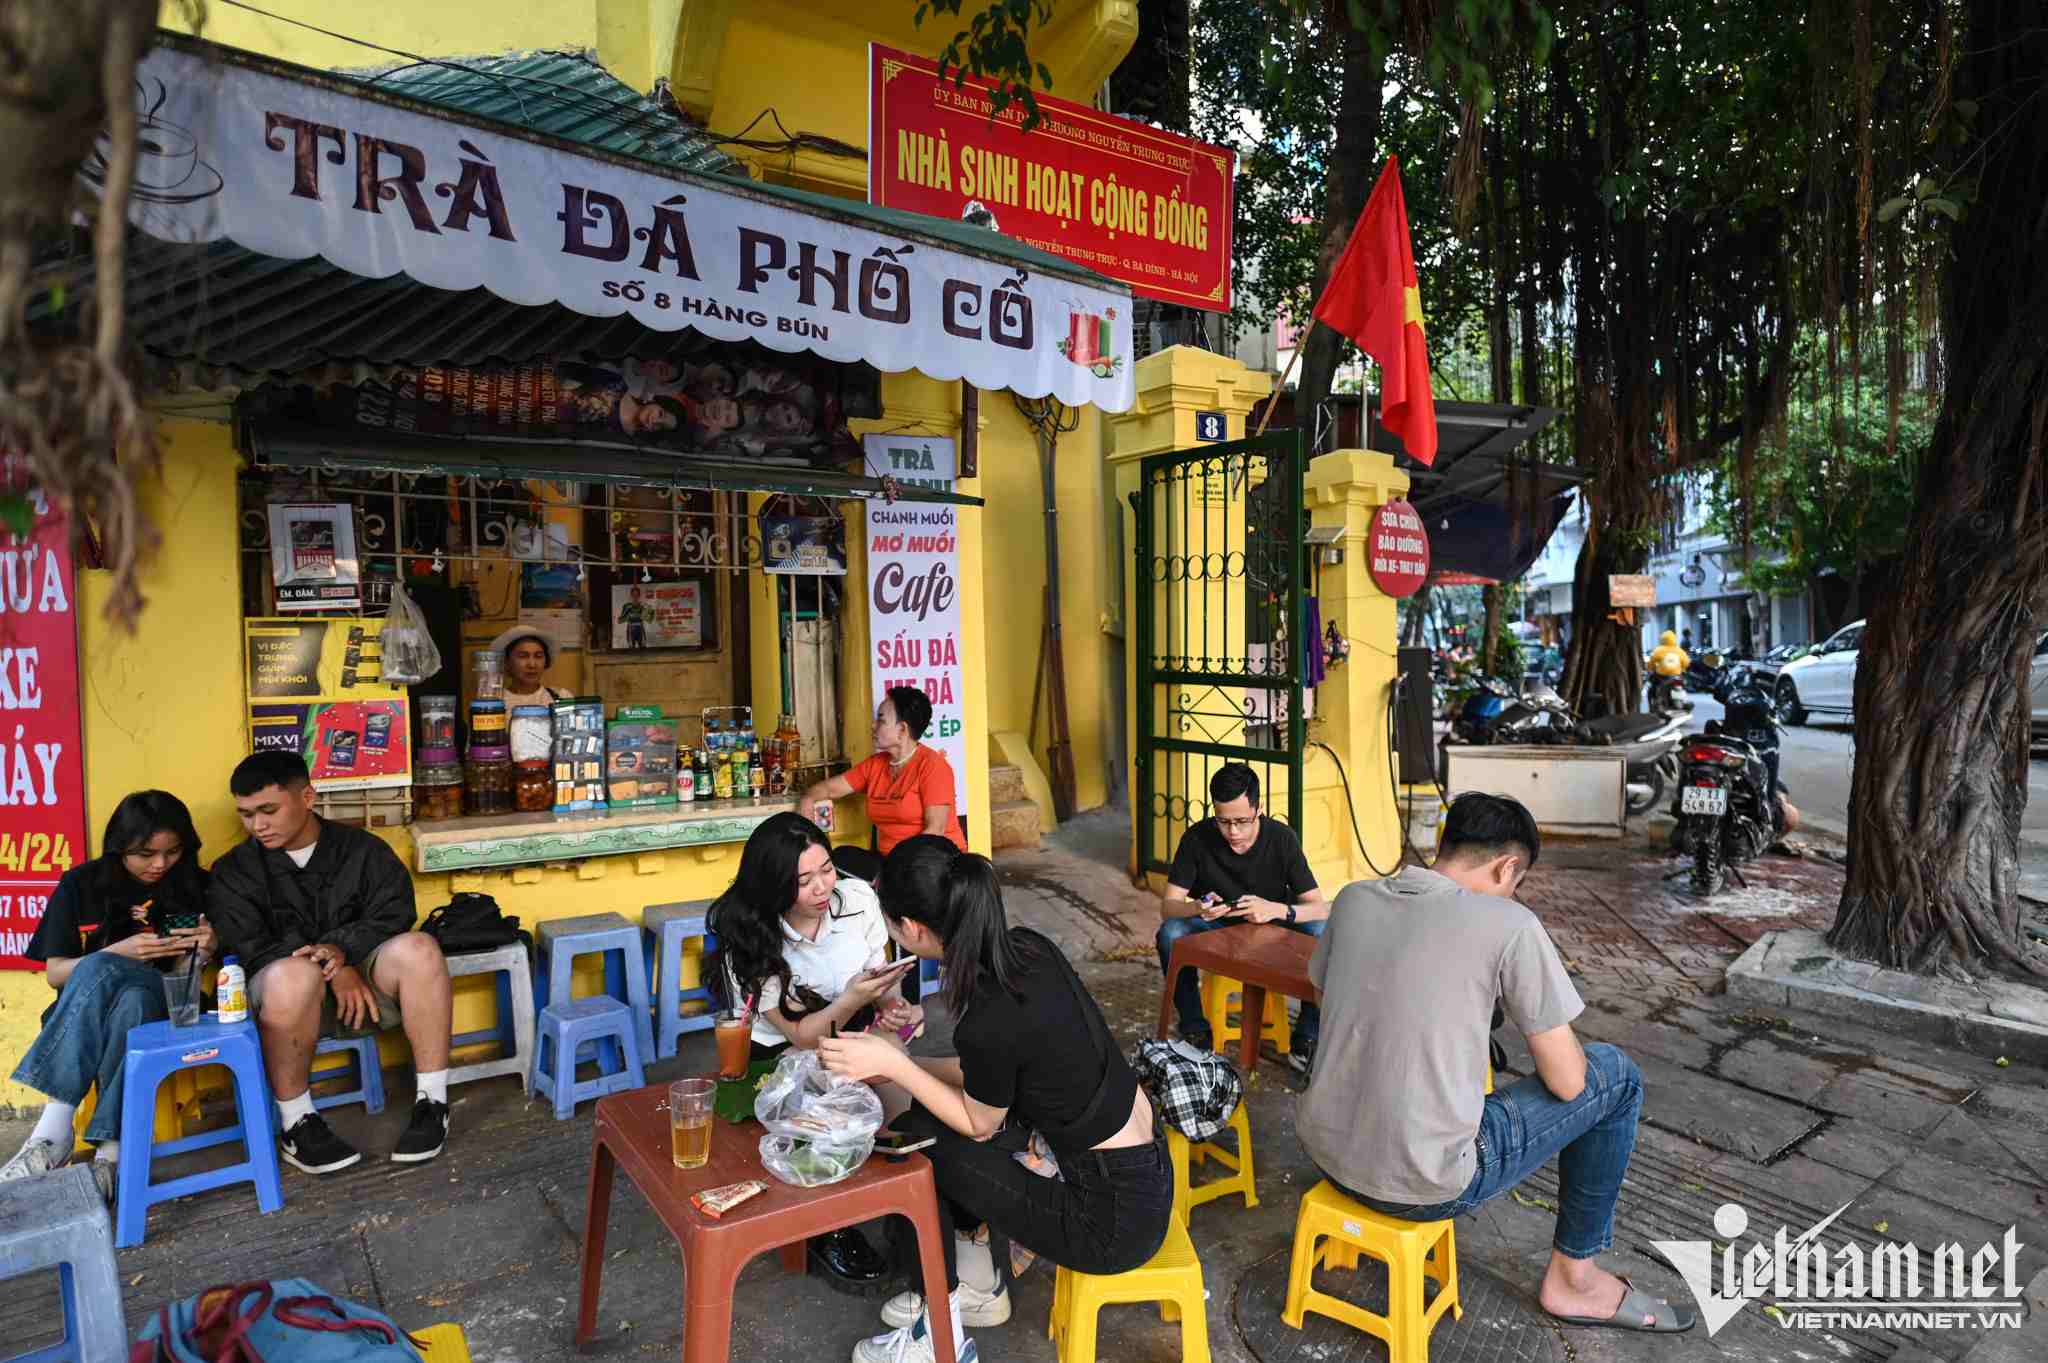 Vietnamese drinks - Trà đá vỉa hè